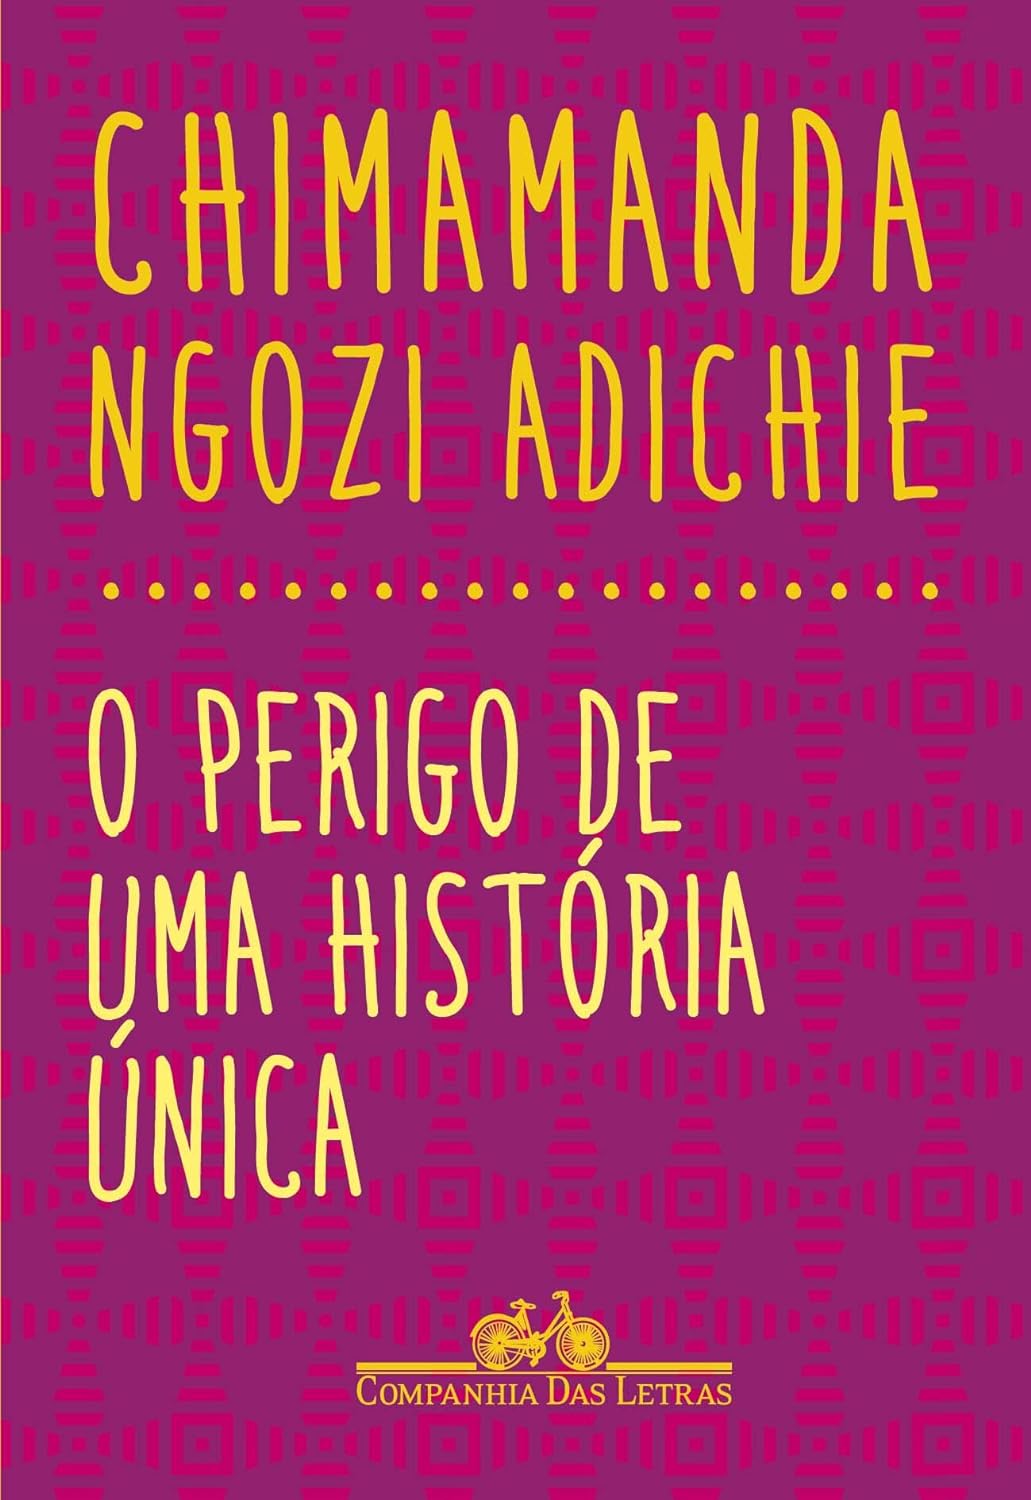 Chimamanda Ngozi Adichie: O perígo de uma história única (Paperback, Português language, 2019, Companhia das letras)